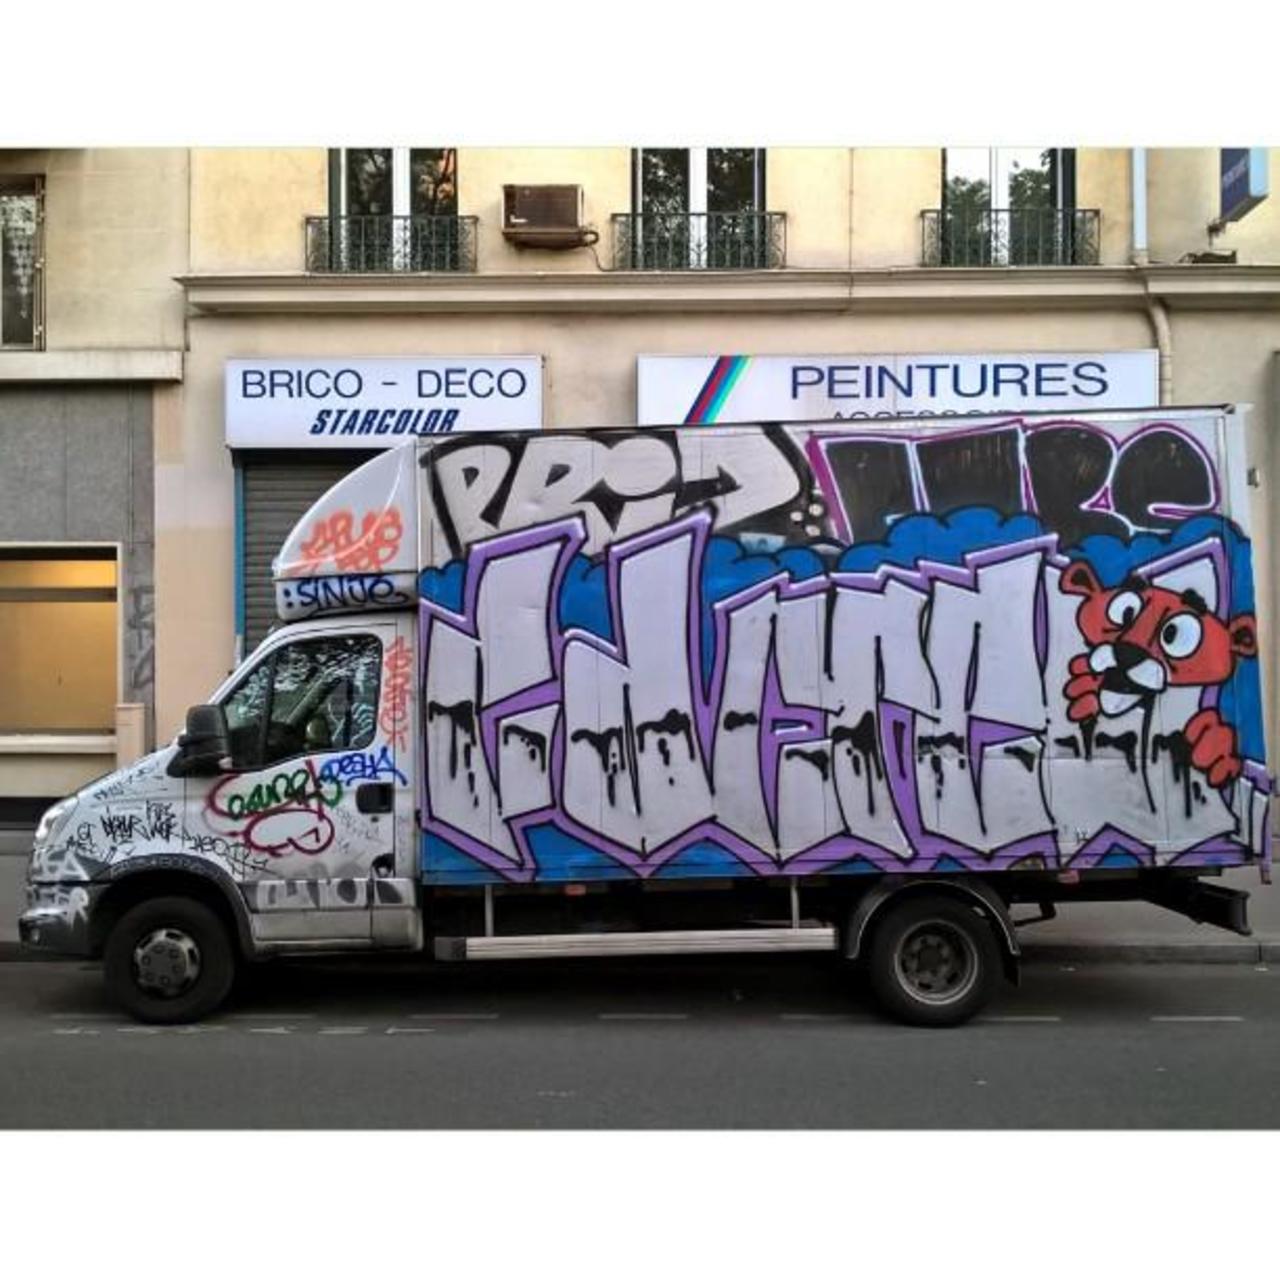 #Paris #graffiti photo by maxdimontemarciano http://ift.tt/1JXKHLq #StreetArt http://t.co/QA4ZjoPYmt https://goo.gl/7kifqw